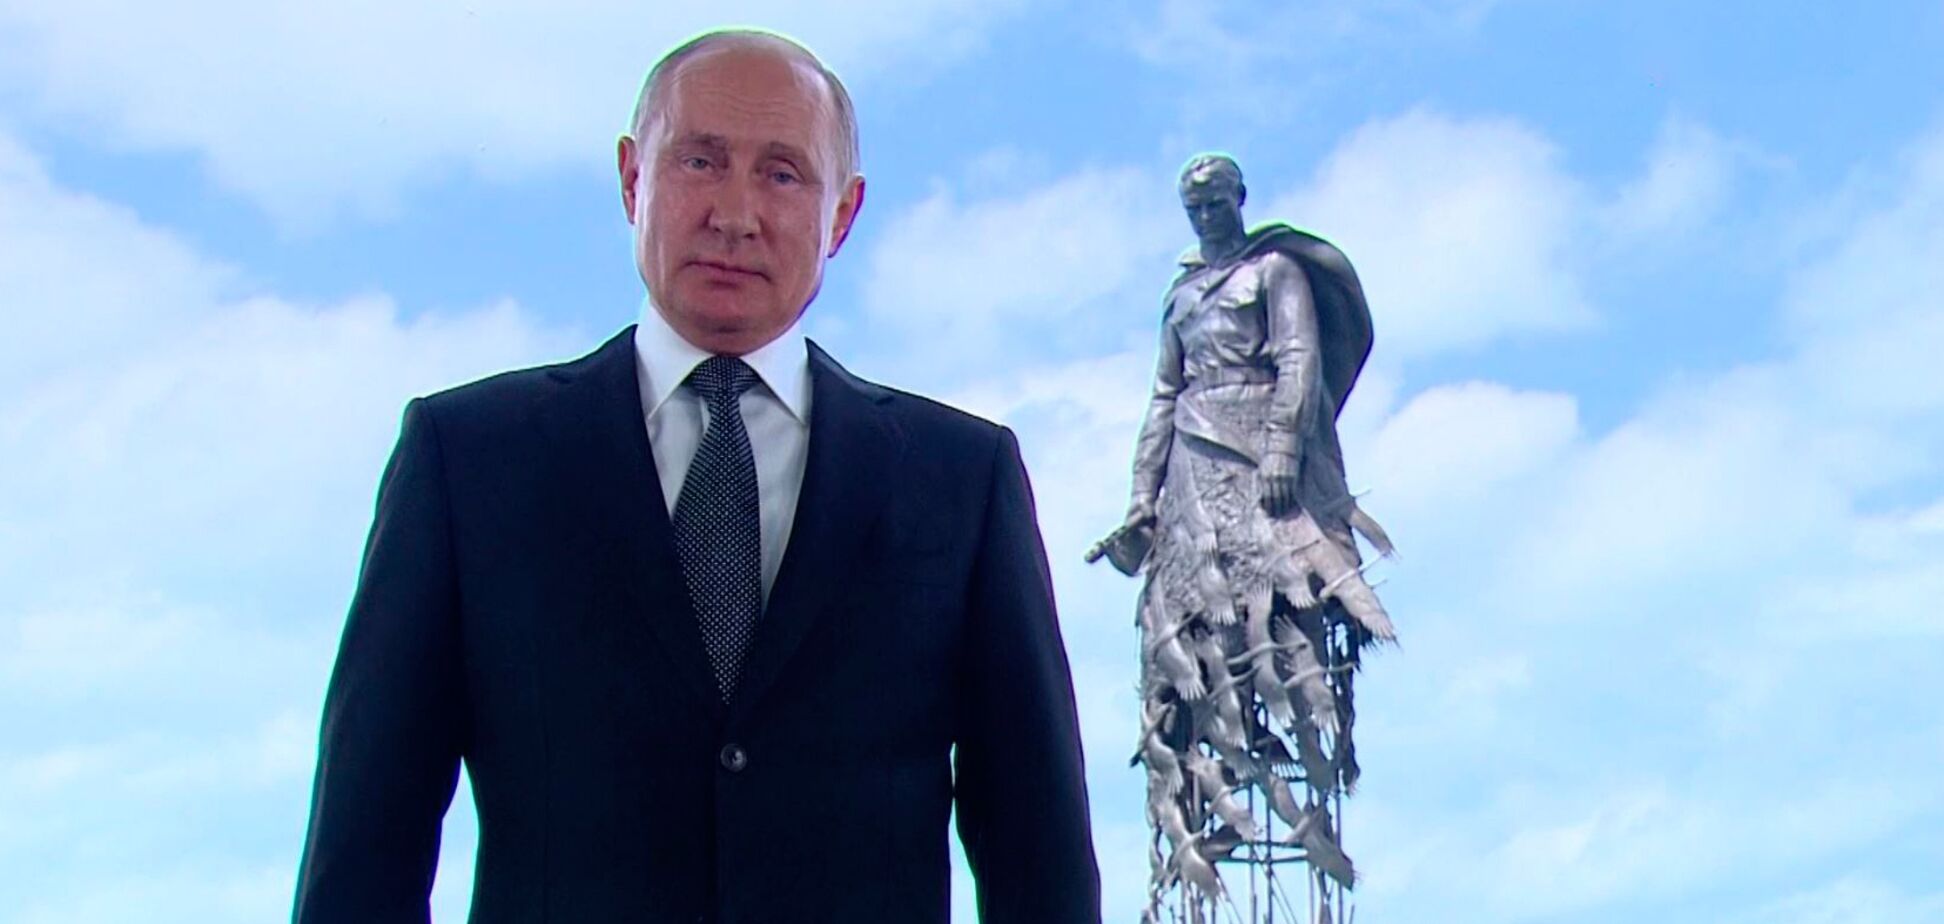 Пользователи соцсетей нашли орфографическую ошибку в монументе, который открыли Путин и Лукашенко